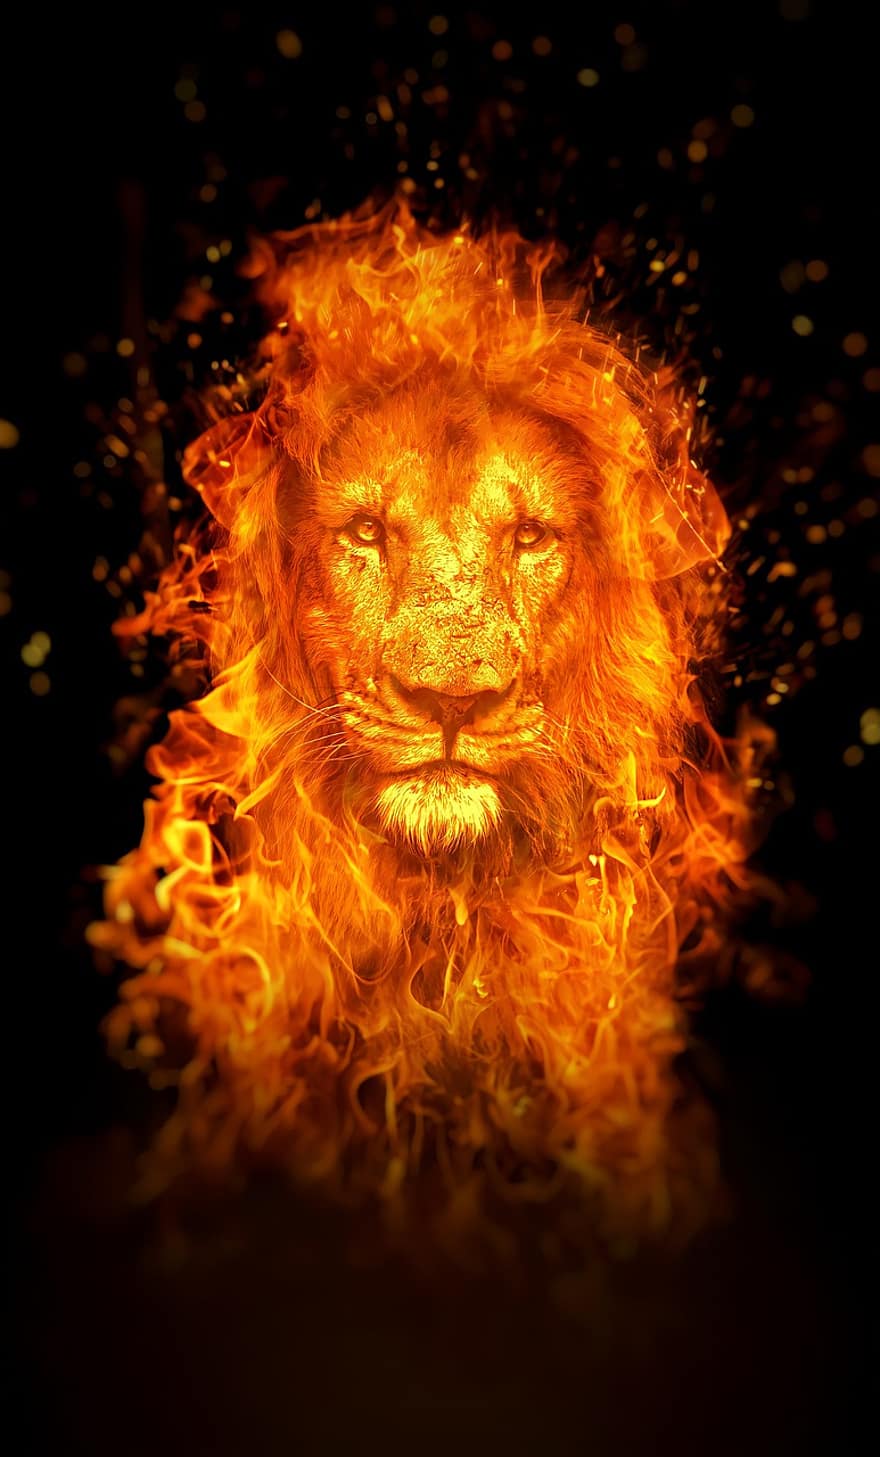 løve, Brann, bakgrunns, foto manipulasjon, Foto redigering, surrealistisk, digital kunst, flamme, Flamende løve, Flamende dyr